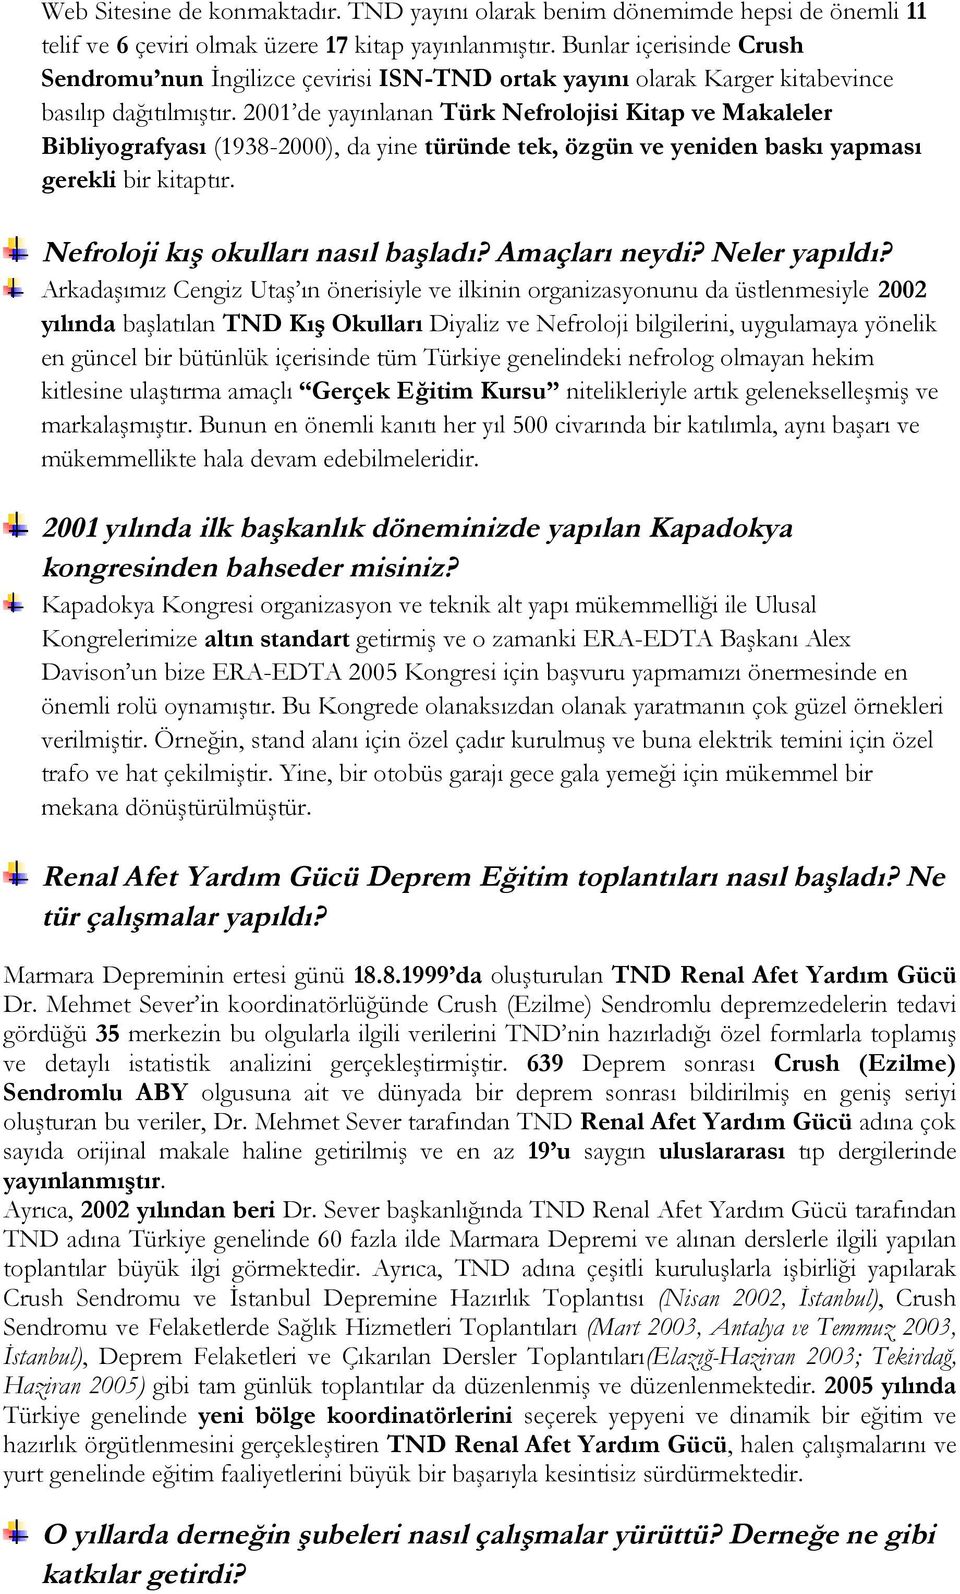 2001 de yayınlanan Türk Nefrolojisi Kitap ve Makaleler Bibliyografyası (1938-2000), da yine türünde tek, özgün ve yeniden baskı yapması gerekli bir kitaptır. Nefroloji kış okulları nasıl başladı?